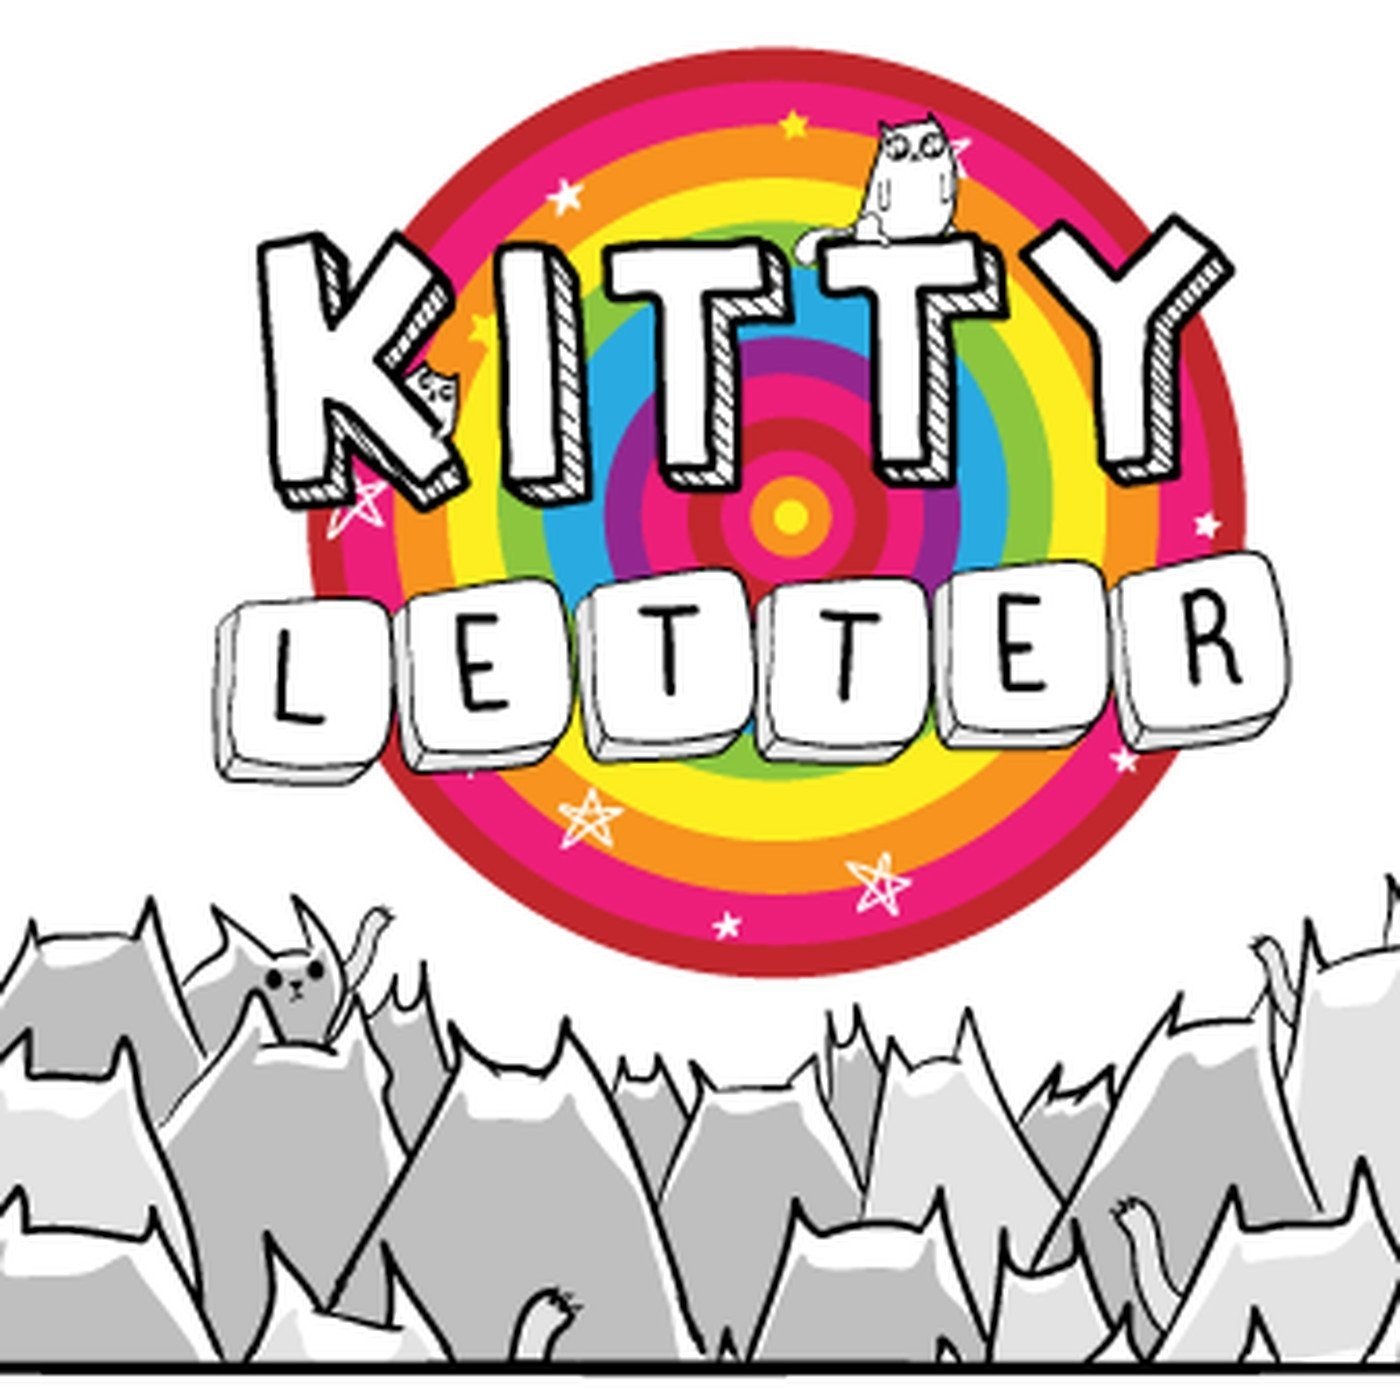 Kitty Letter, así es la versión móvil de Exploding Kittens